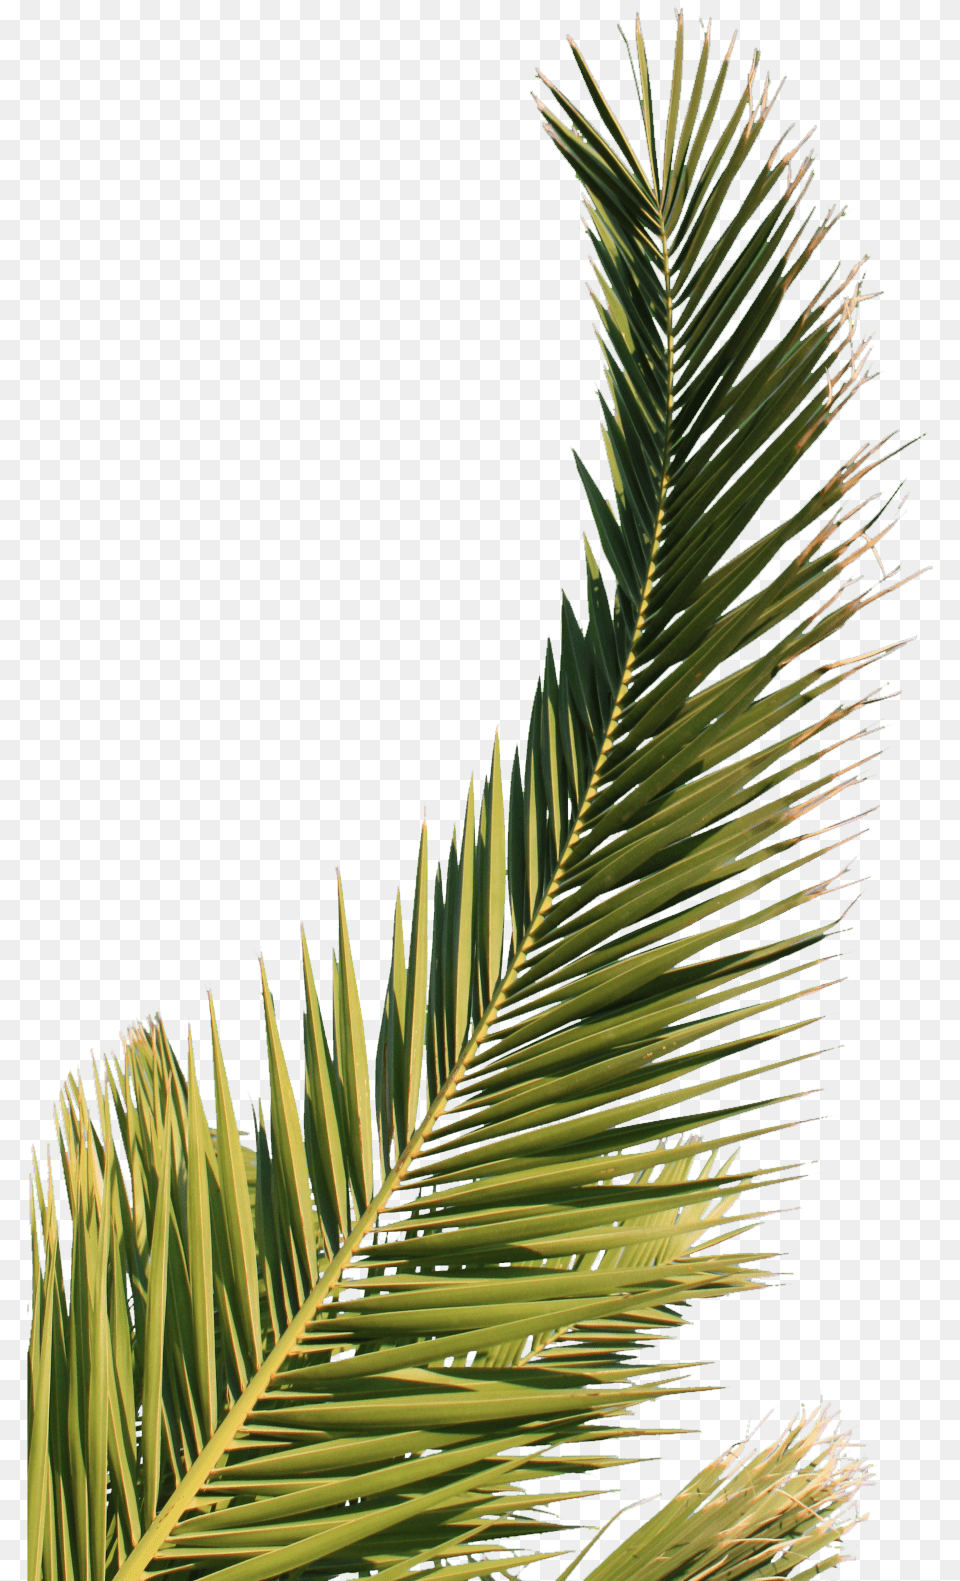 Palm Tree Leaf Download Feuille De Palmier, Fir, Palm Tree, Plant, Conifer Free Transparent Png